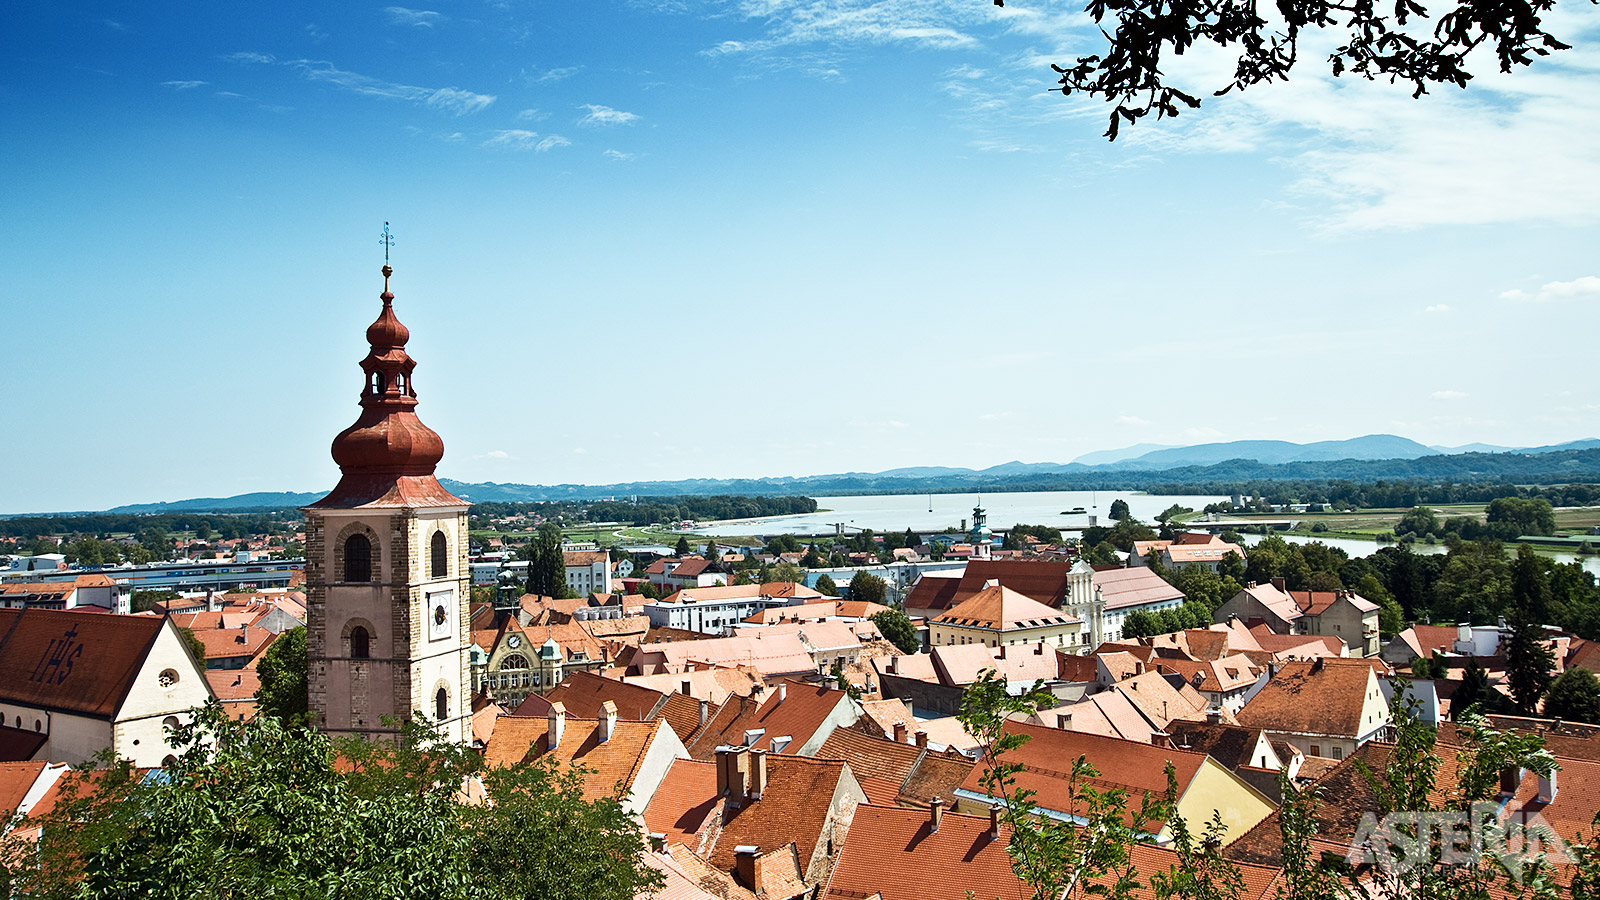 Ptuj is het oudste stadje van Slovenië, genesteld tussen heuvels met wijngaarden en de Drava-rivier